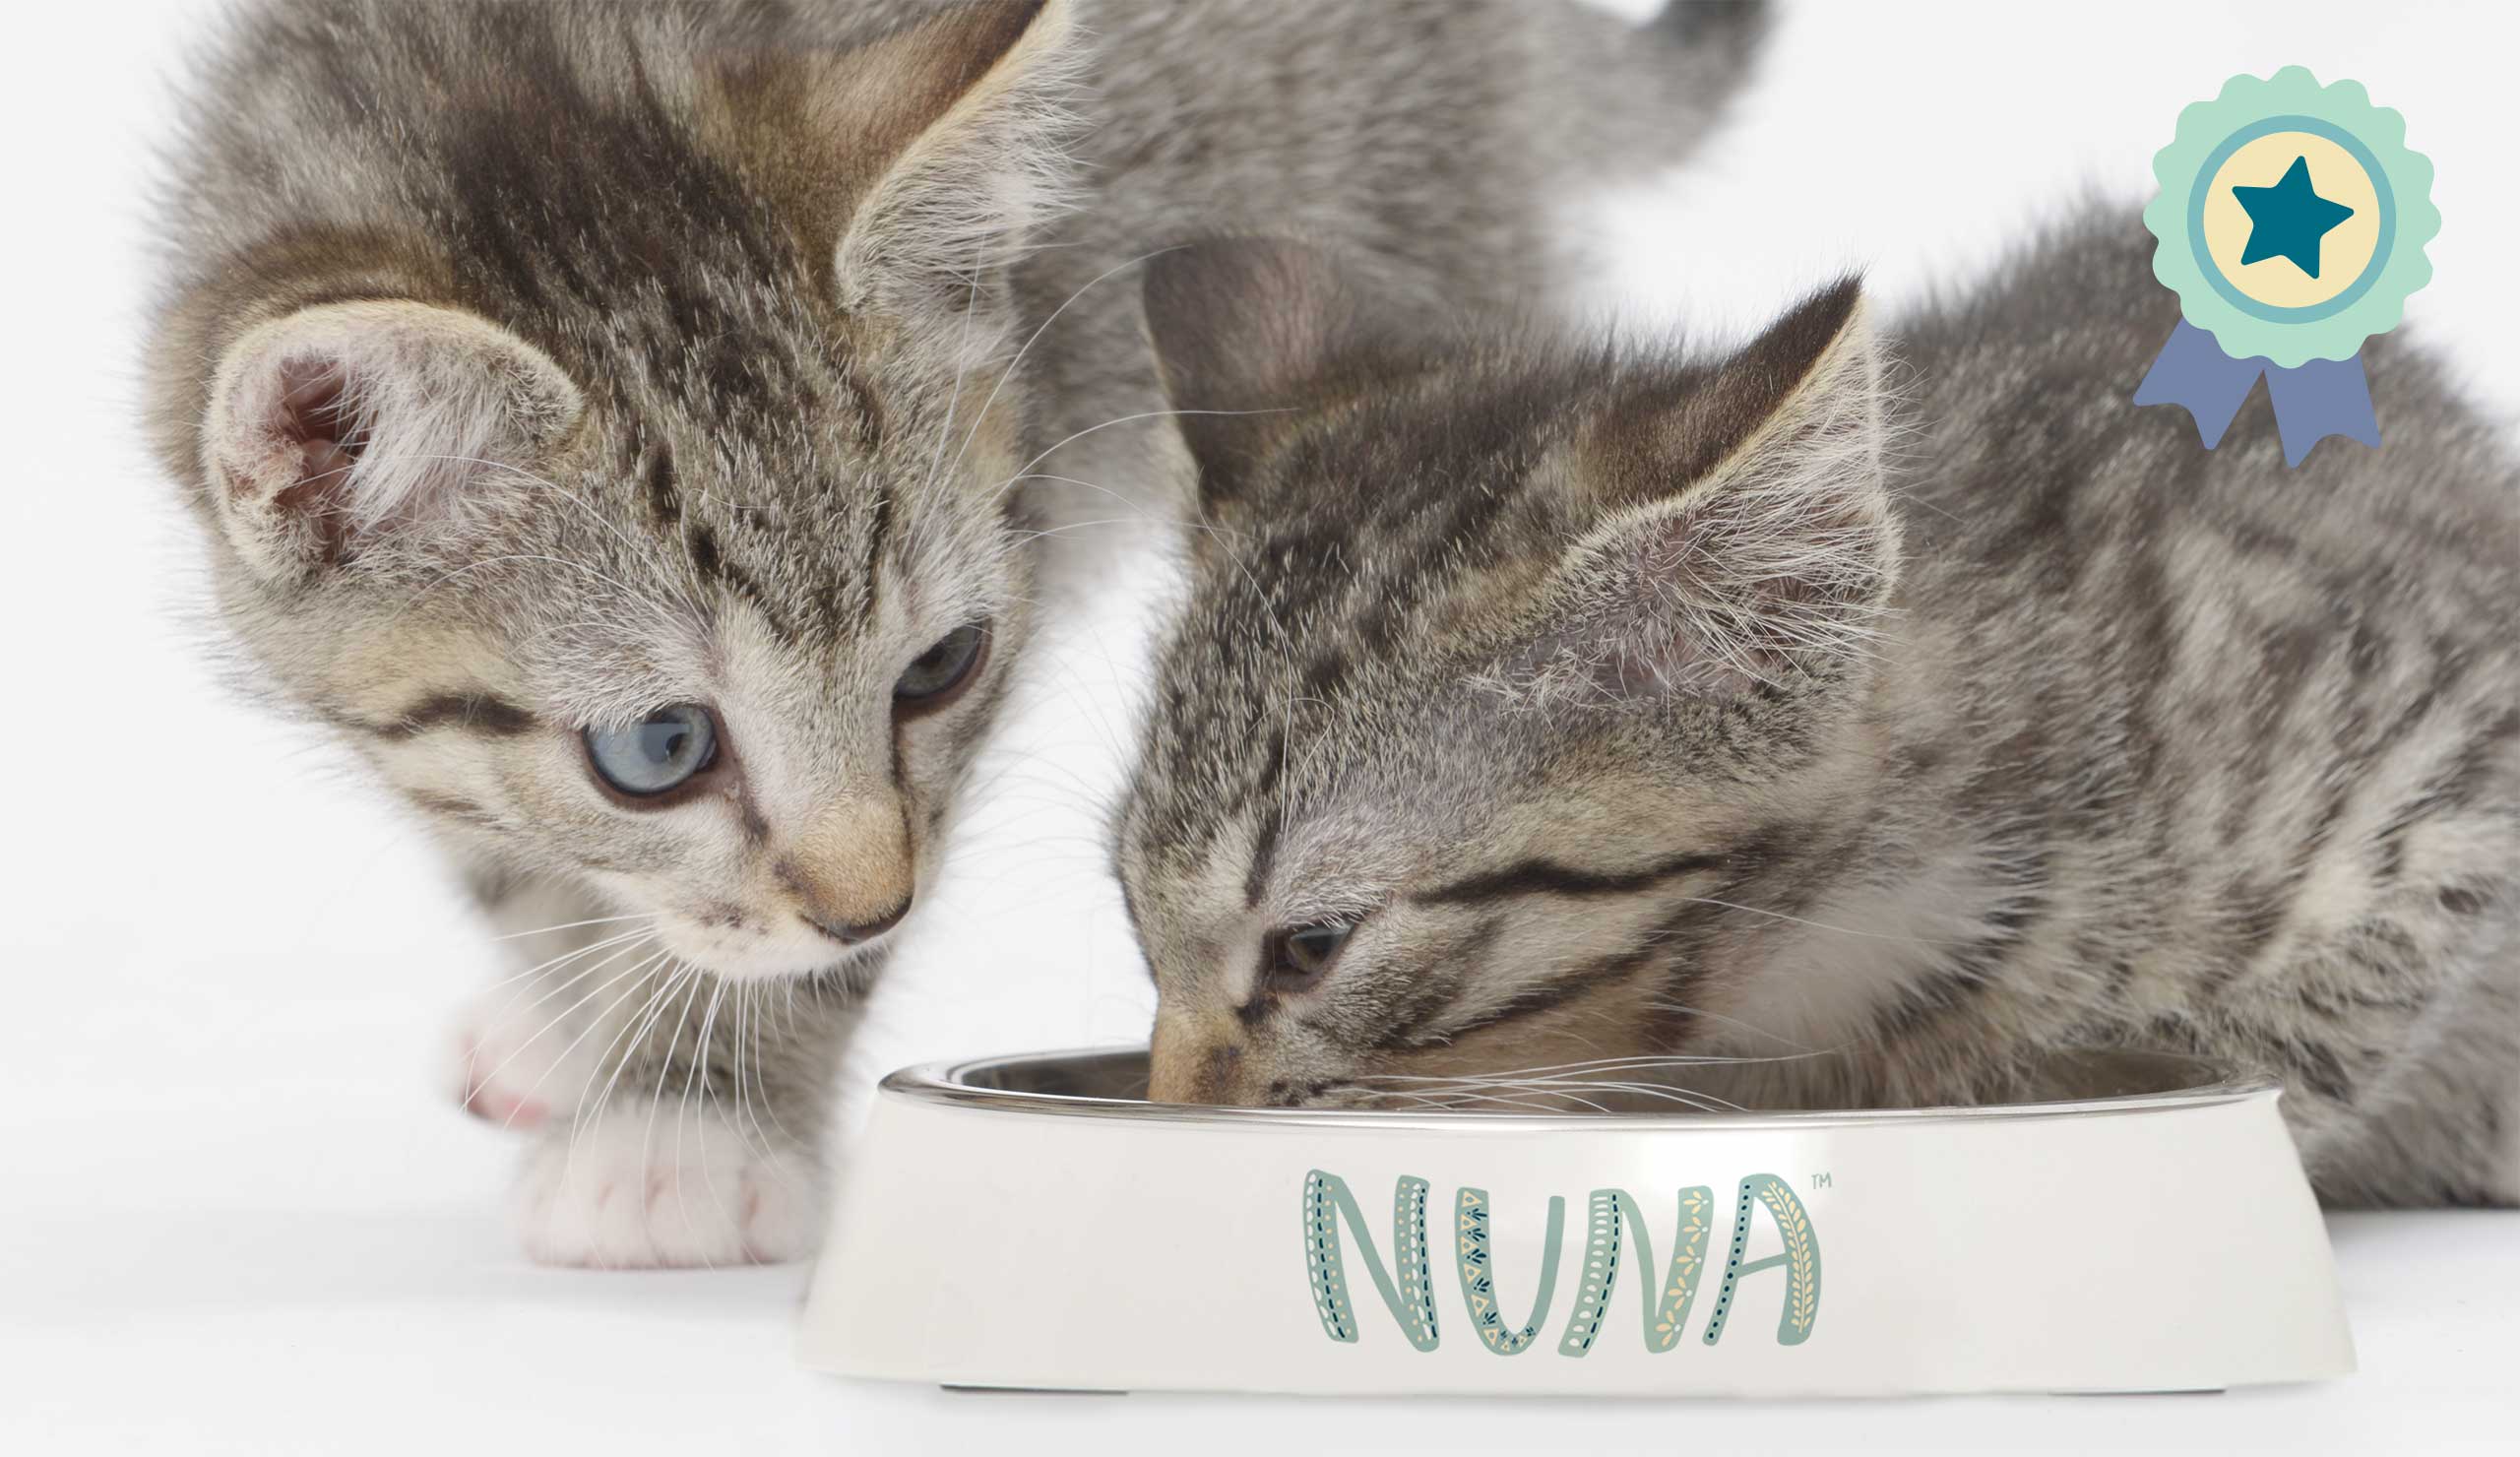 Las recetas de Nuna son las ganadoras de la prueba de sabor según nuestro jurado de gatos catadores